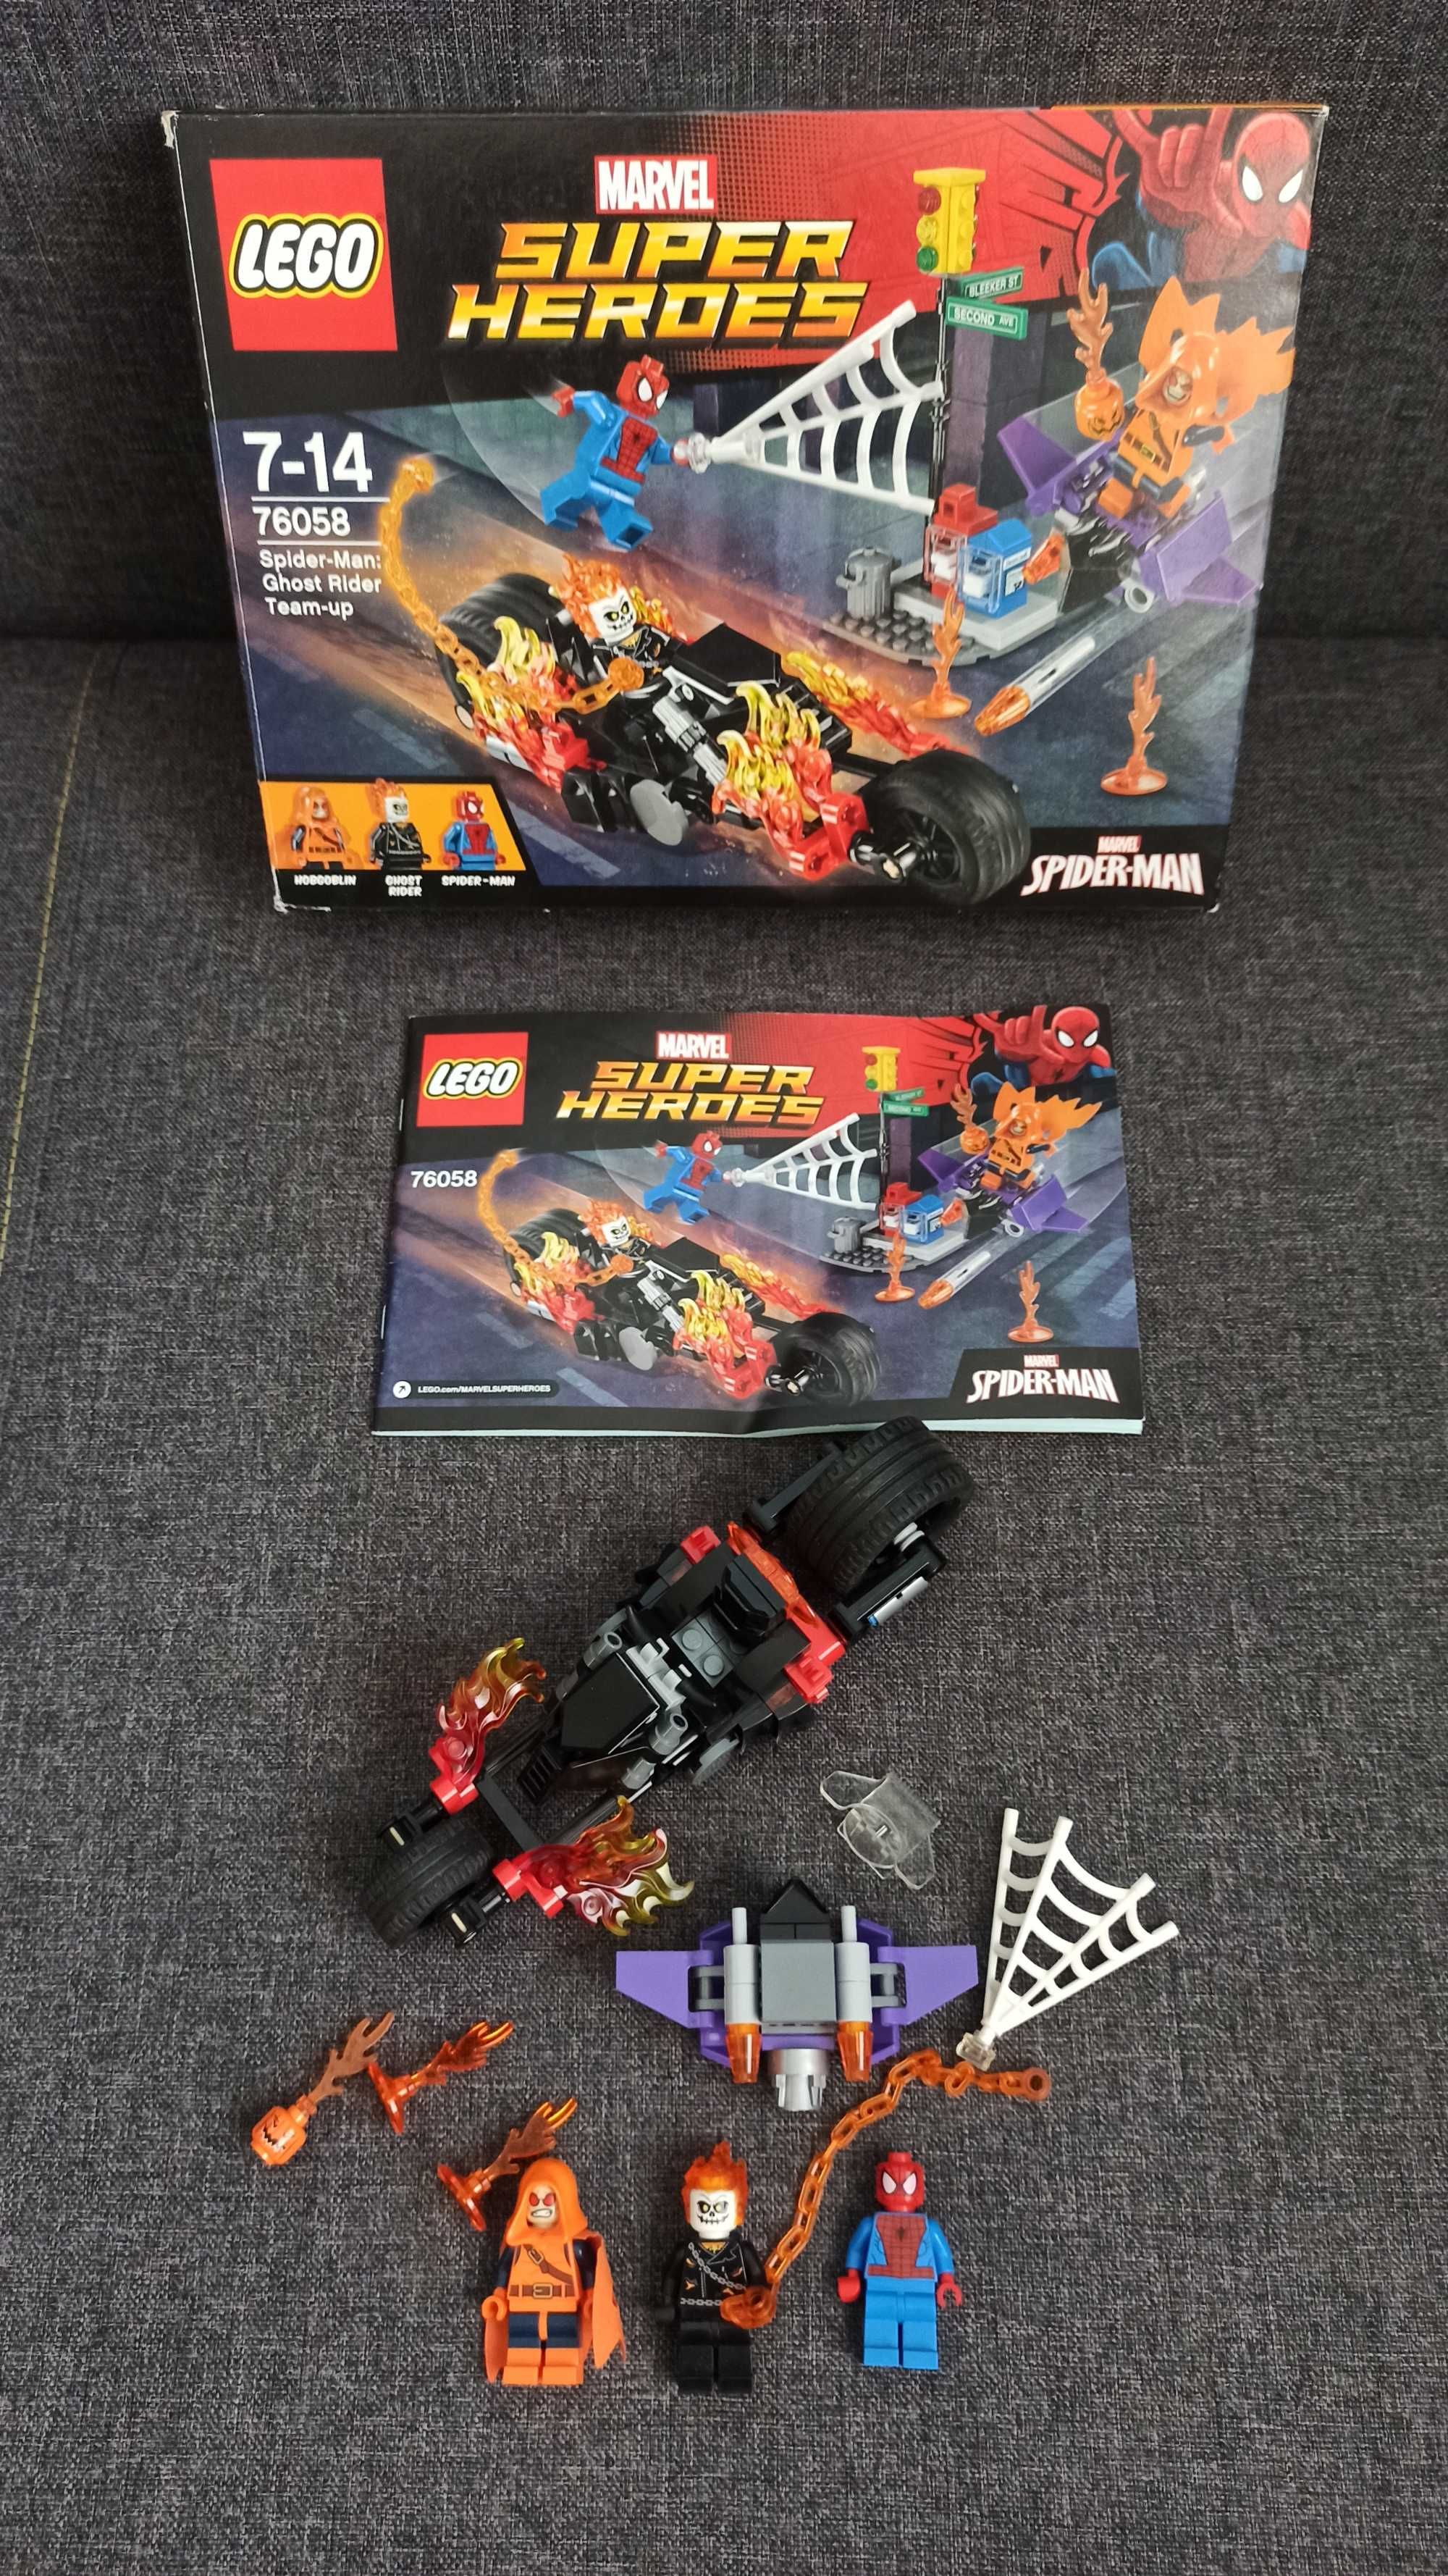 LEGO 76058 Spider-Man: Ghost Rider Team-up BOX